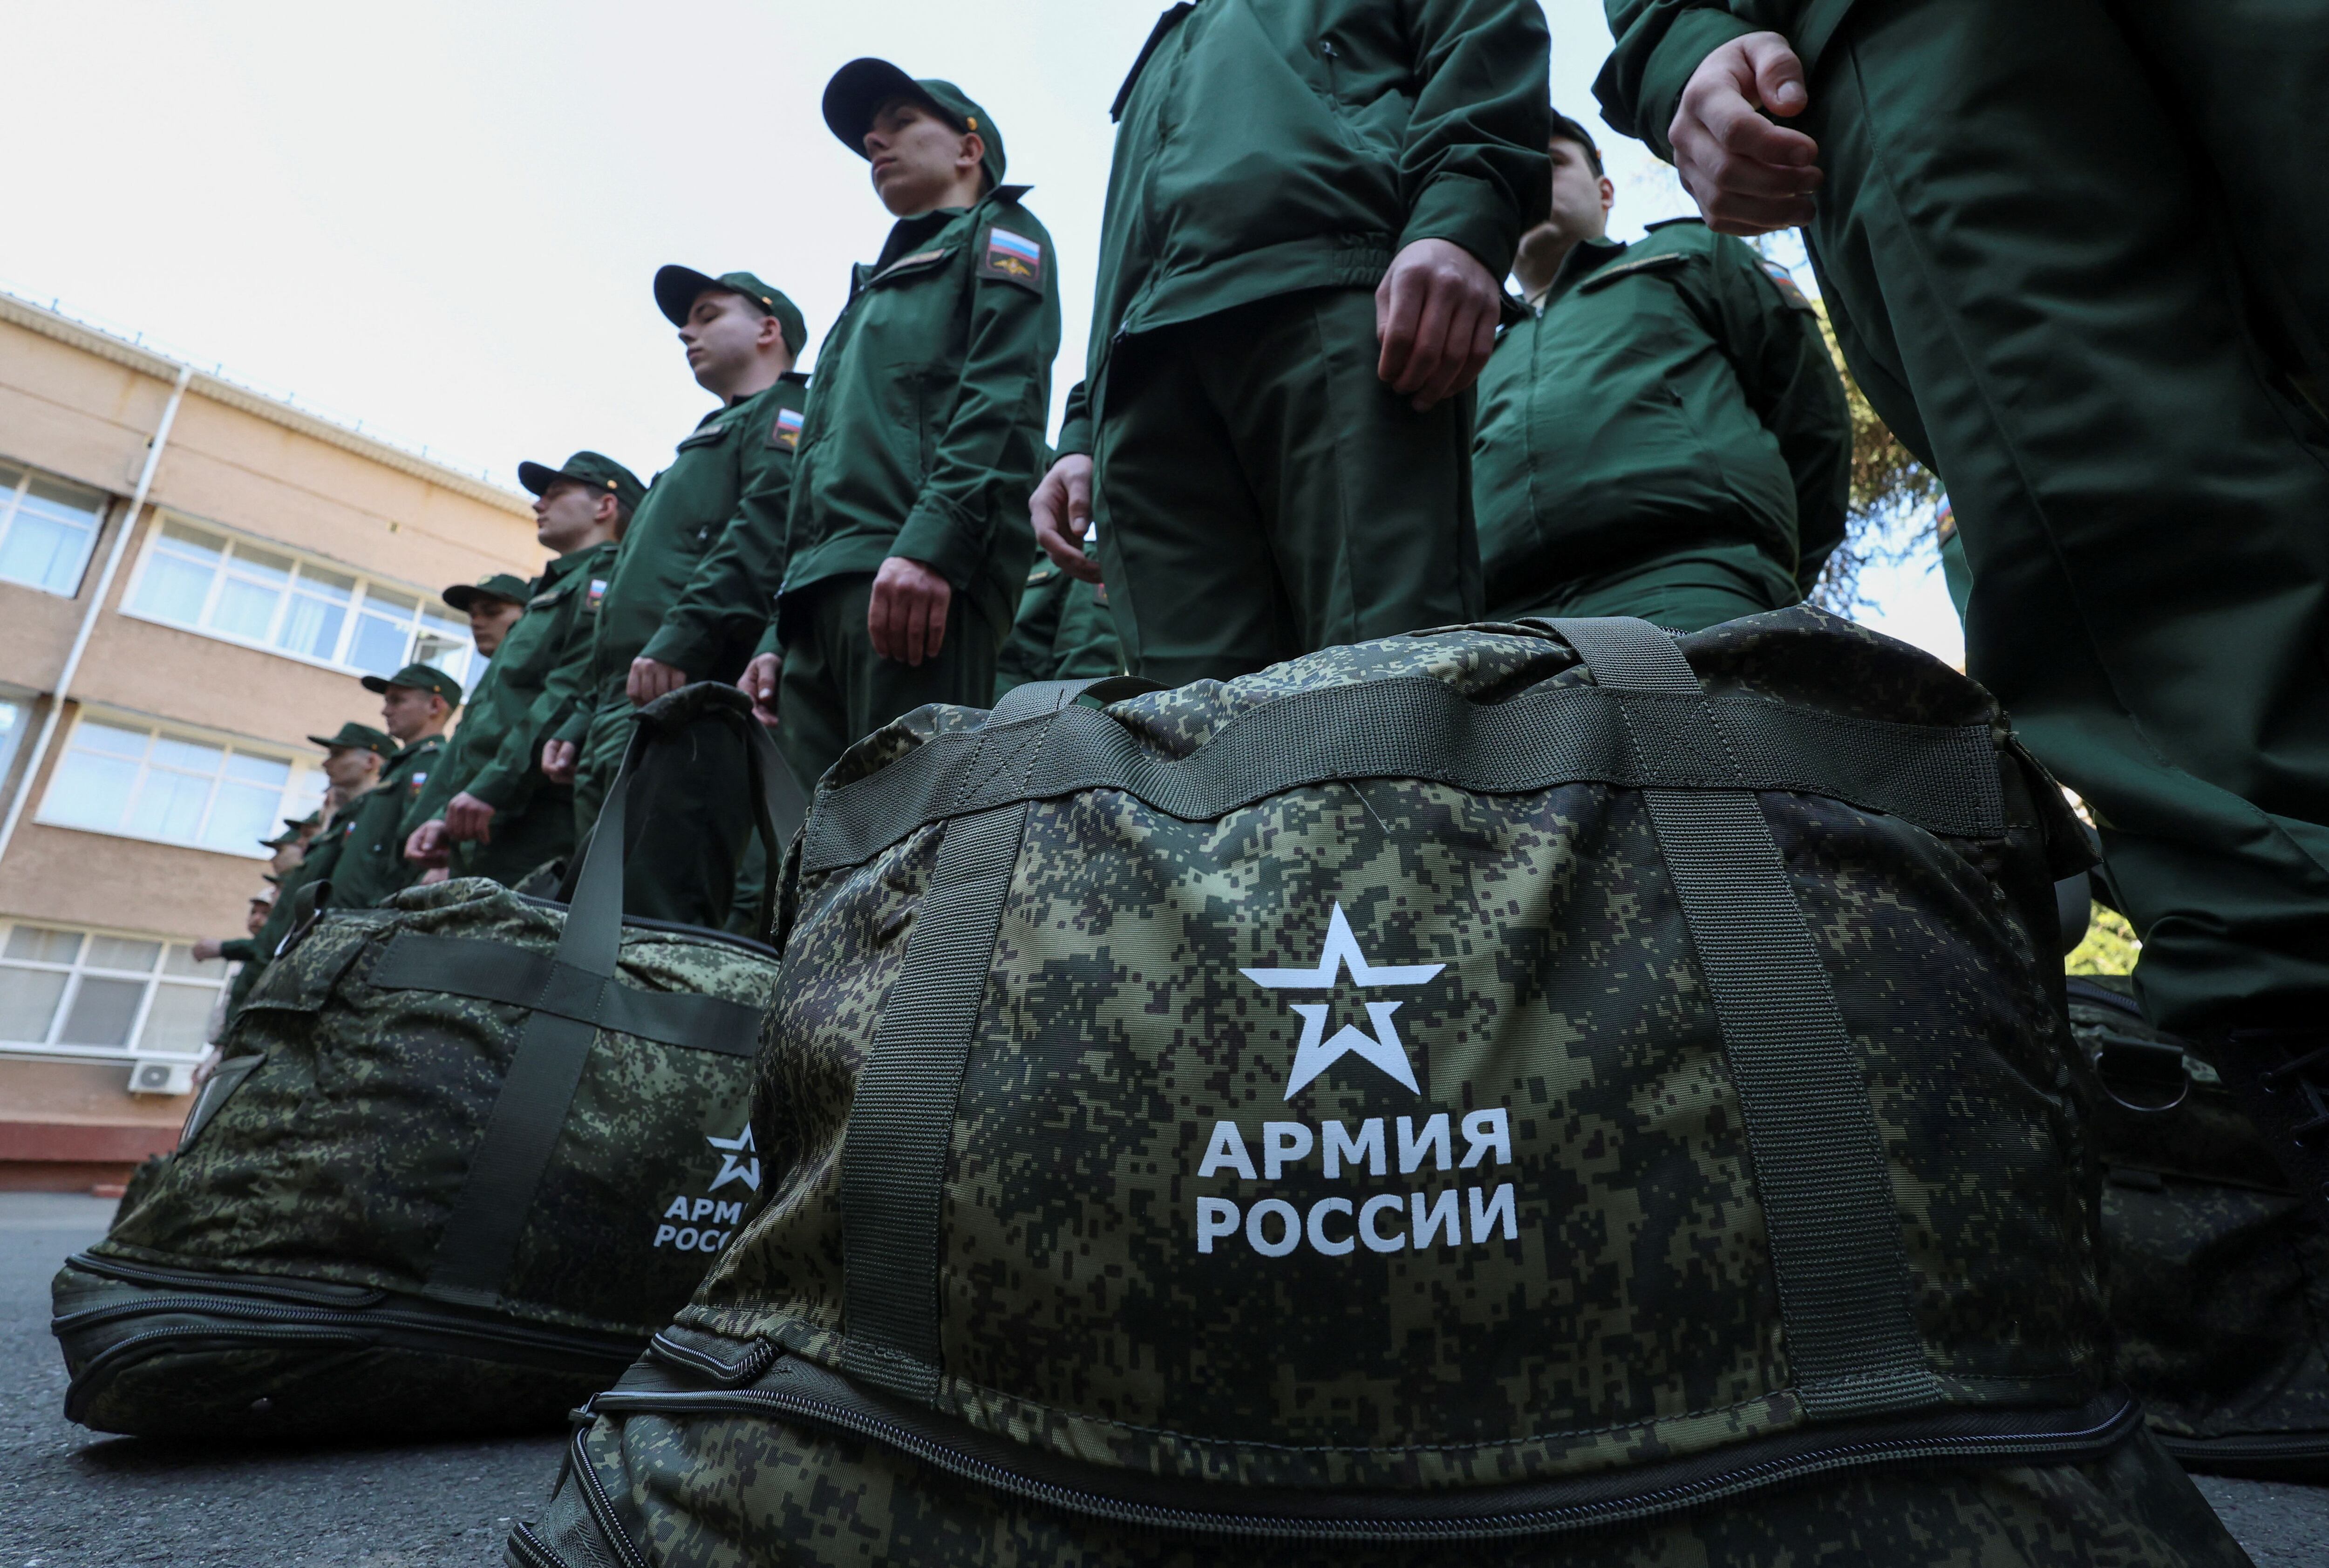 Reclutas rusos llamados a filas para el servicio militar se reúnen en un centro de reclutamiento en Simferopol, Crimea, Ucrania (REUTERS/Alexey Pavlishak)